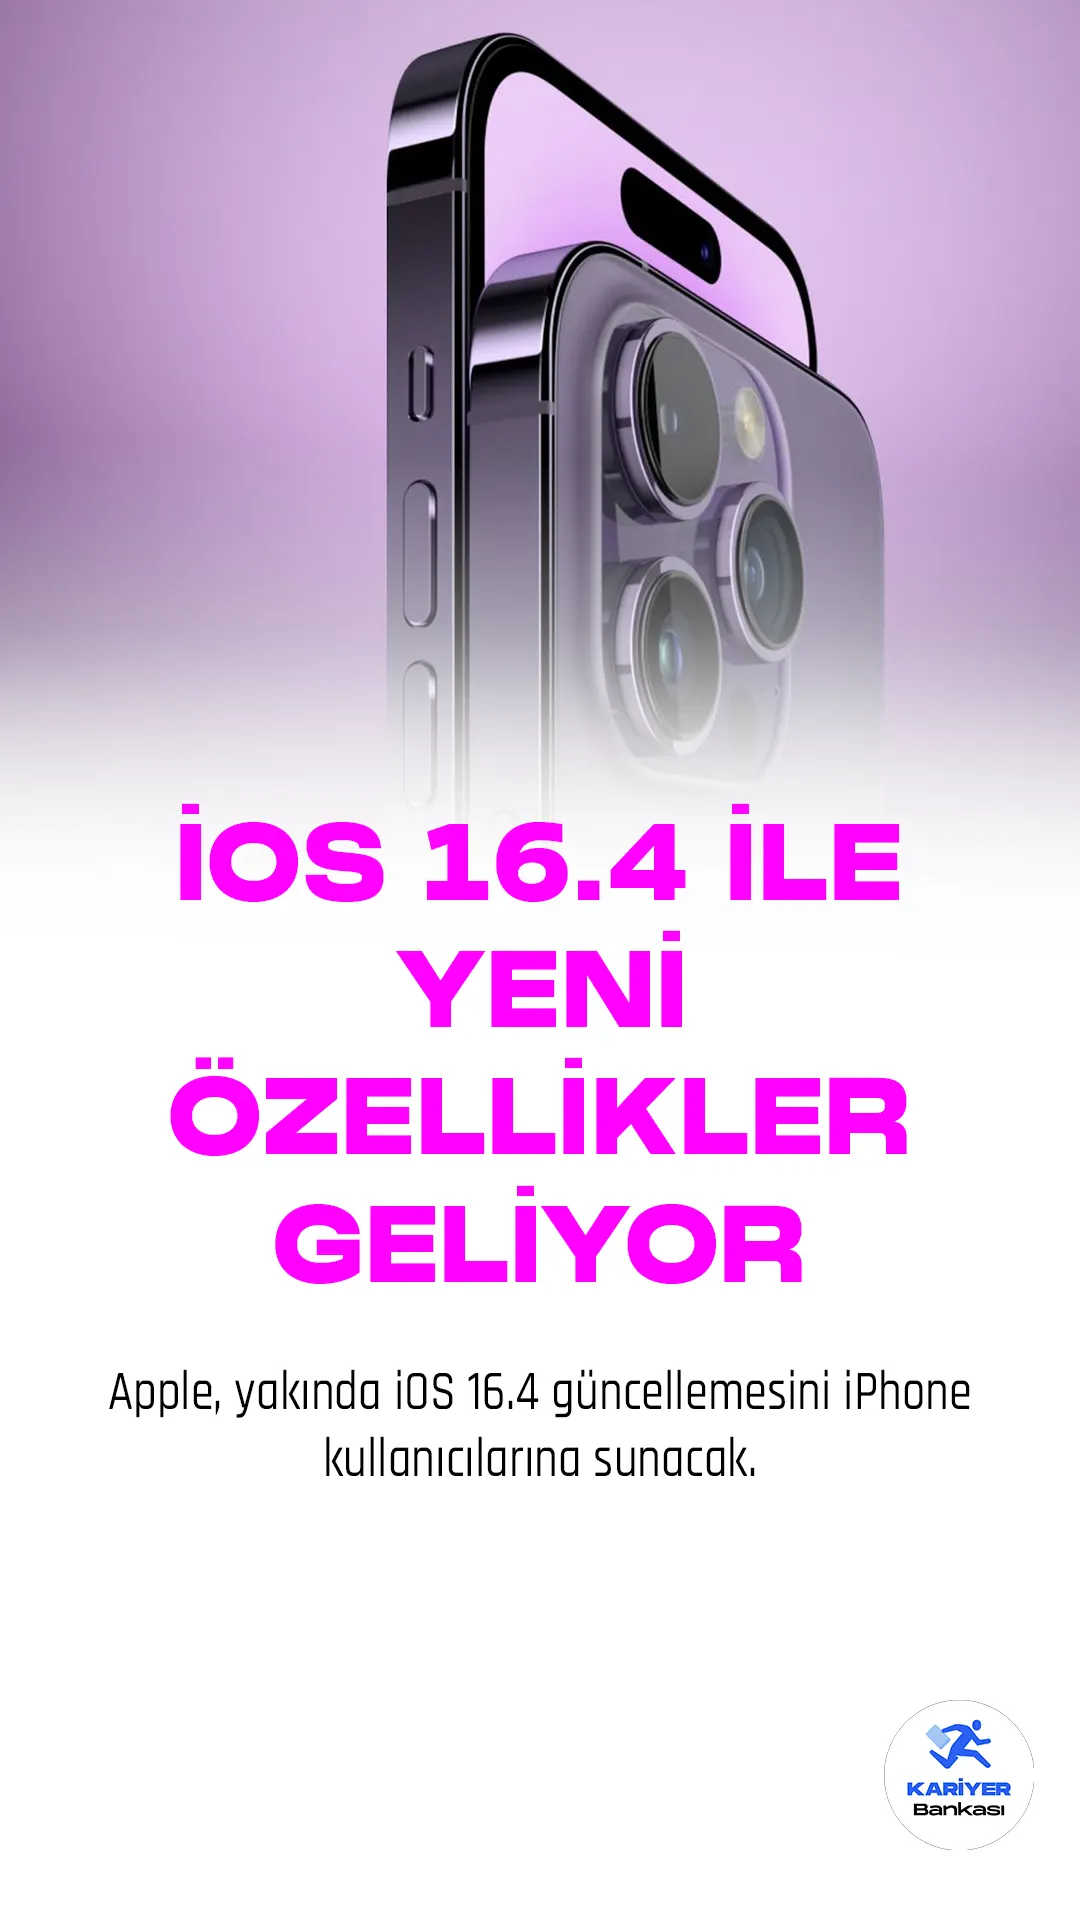 Apple, yakında iOS 16.4 güncellemesini iPhone kullanıcılarına sunacak. Güncelleme, Podcast uygulamasında çeşitli değişiklikler ve Türkiye'deki iPhone'lara 5G desteği getirecek. Ayrıca güncelleme ile kullanıma sunulan özellikler arasında Unicode 15.0 emojileri, Tilt ve Azimuth özellikleri de yer alıyor.